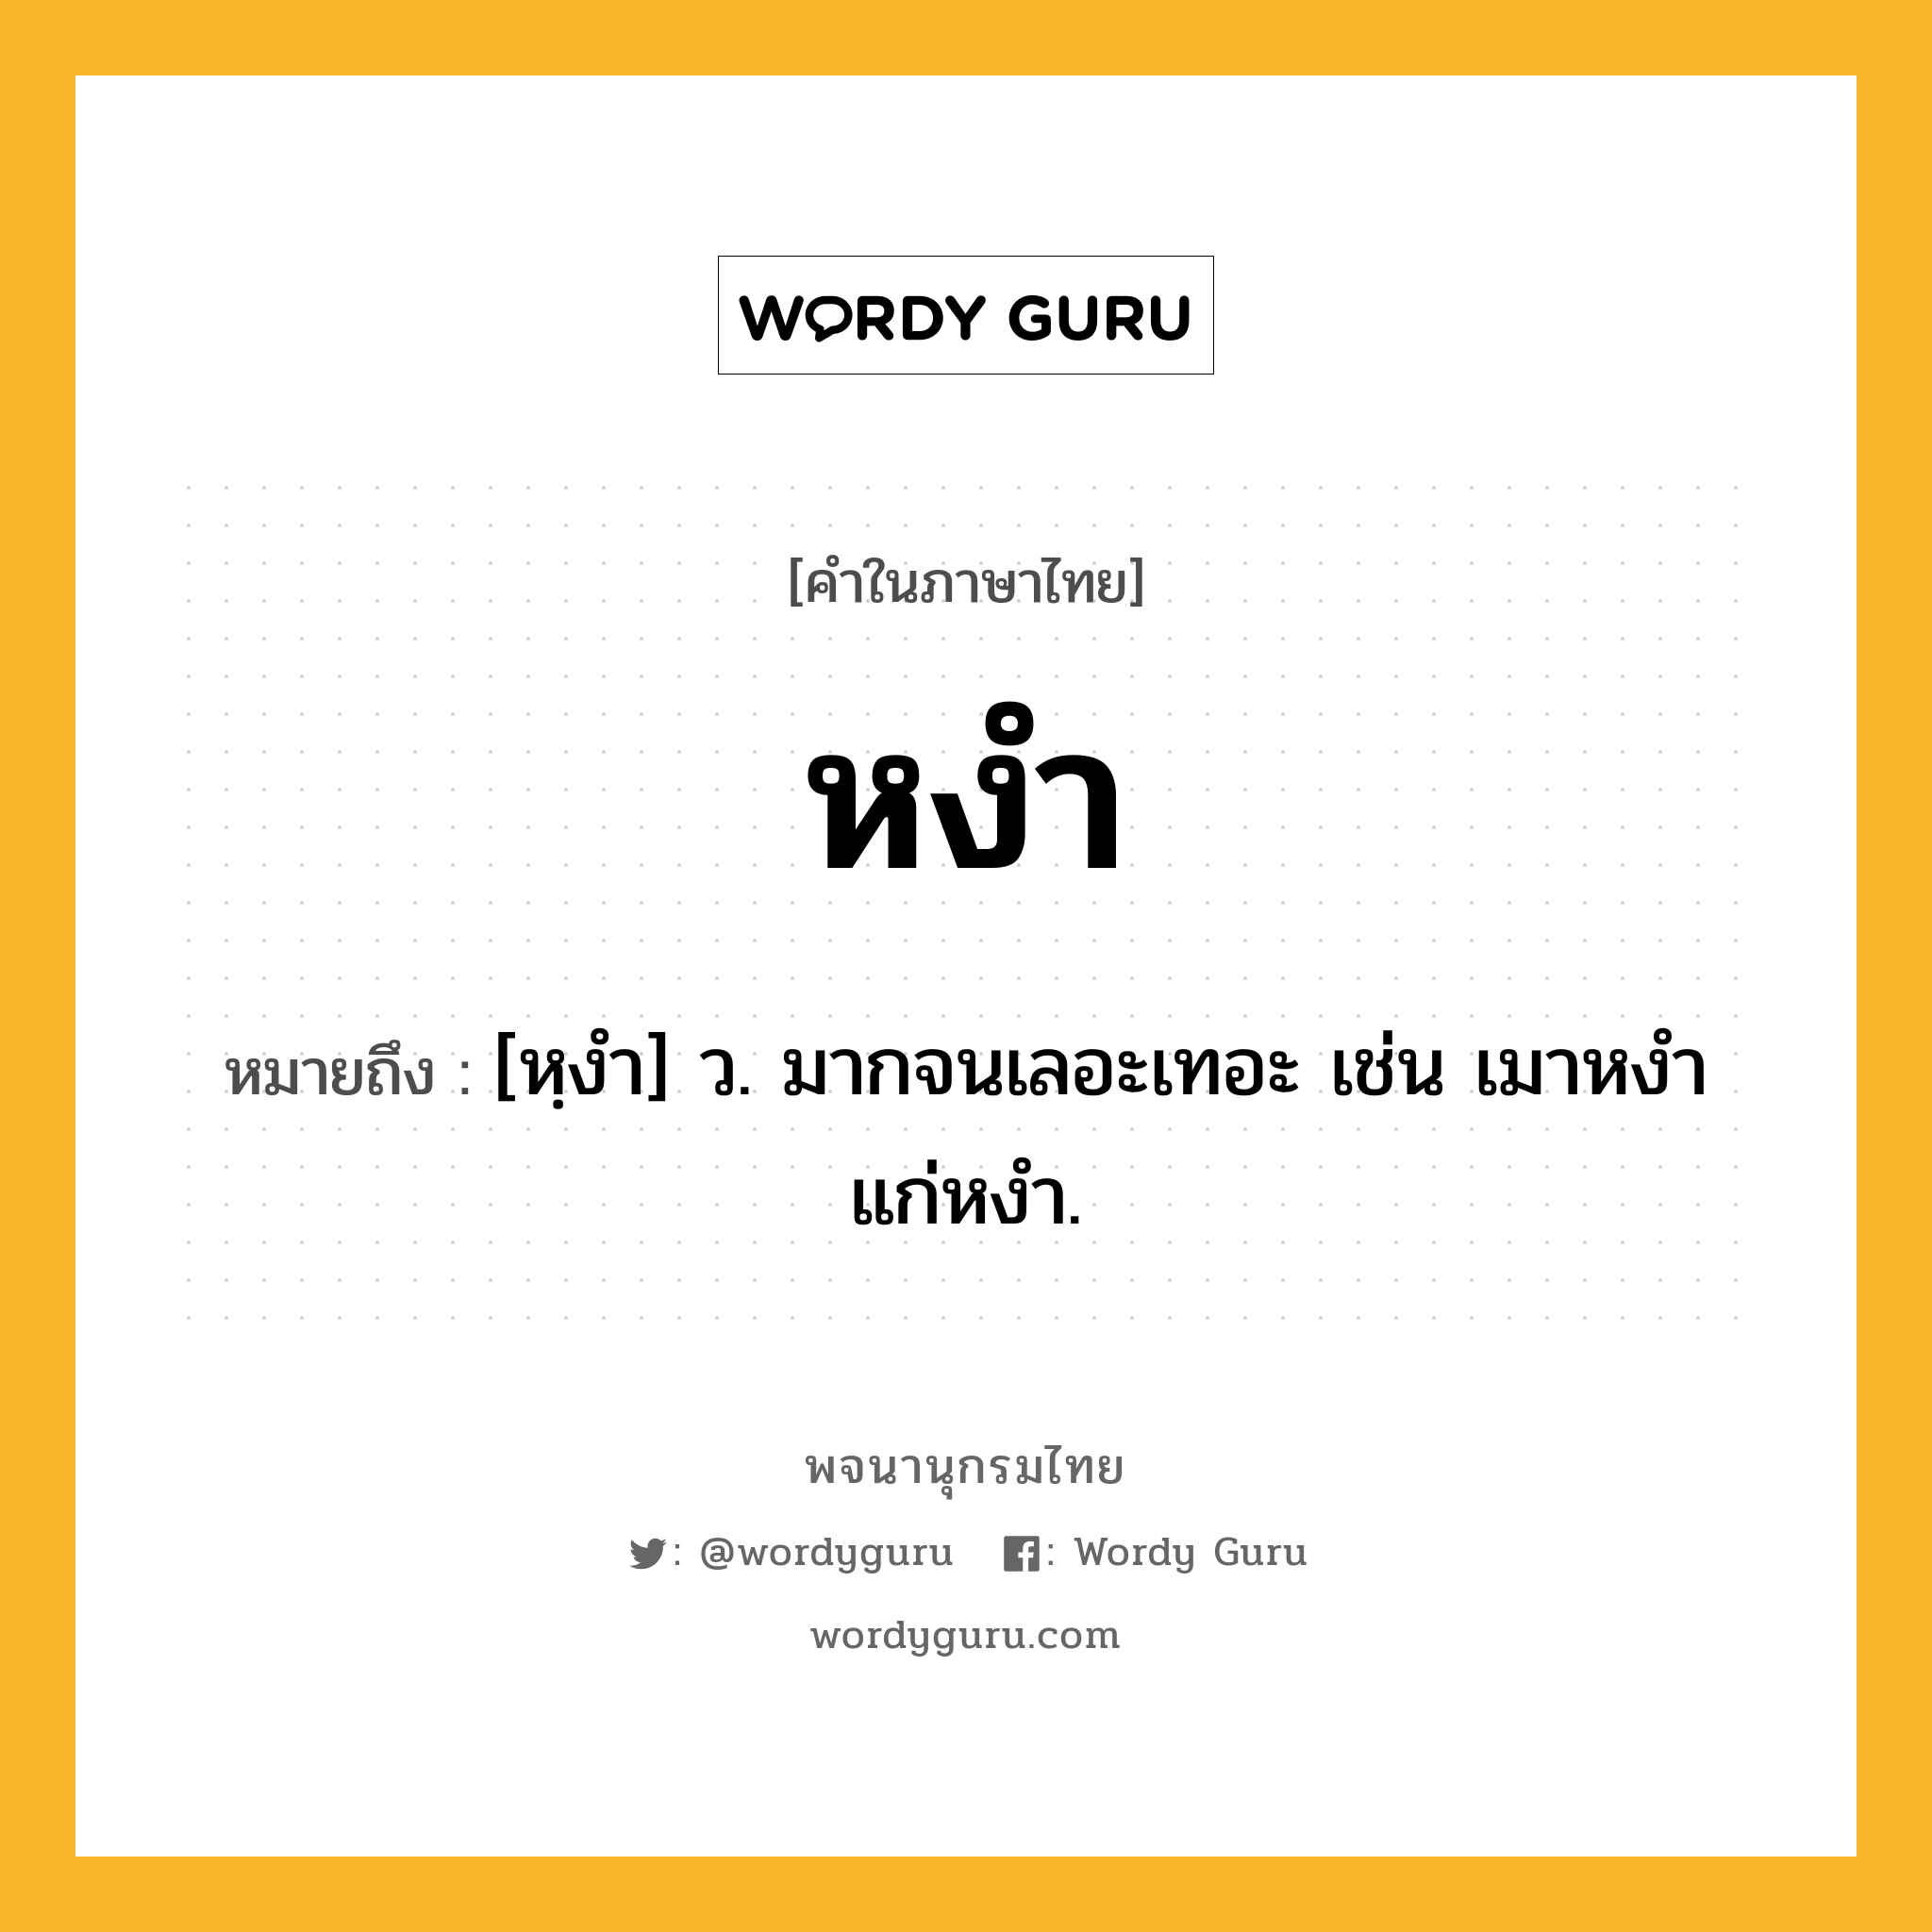 หงำ หมายถึงอะไร?, คำในภาษาไทย หงำ หมายถึง [หฺงํา] ว. มากจนเลอะเทอะ เช่น เมาหงํา แก่หงํา.